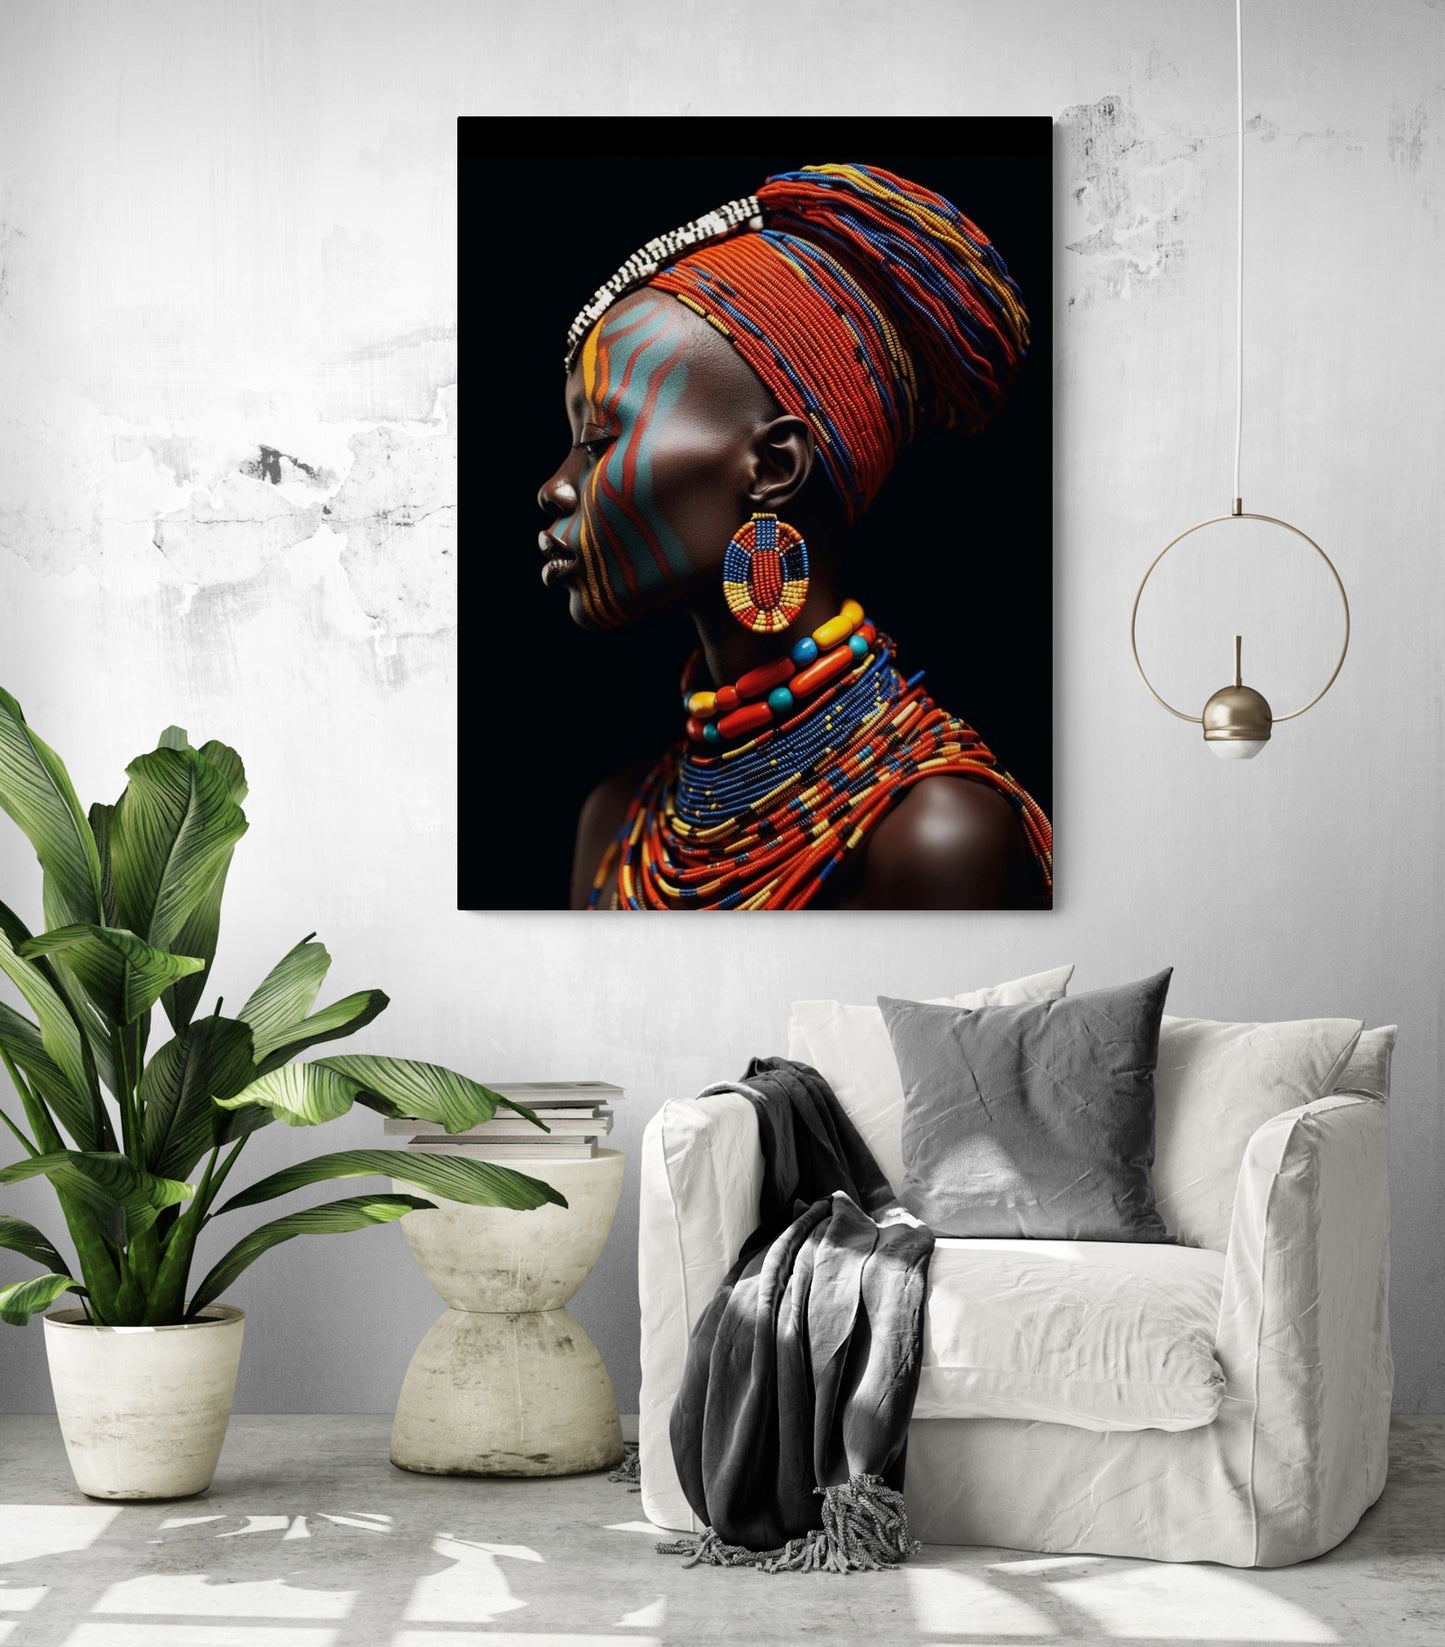 une décoration murale femme Africaine trône majestueusement au-dessus d'un fauteuil blanc, apportant une touche d'exotisme à ce salon moderne.